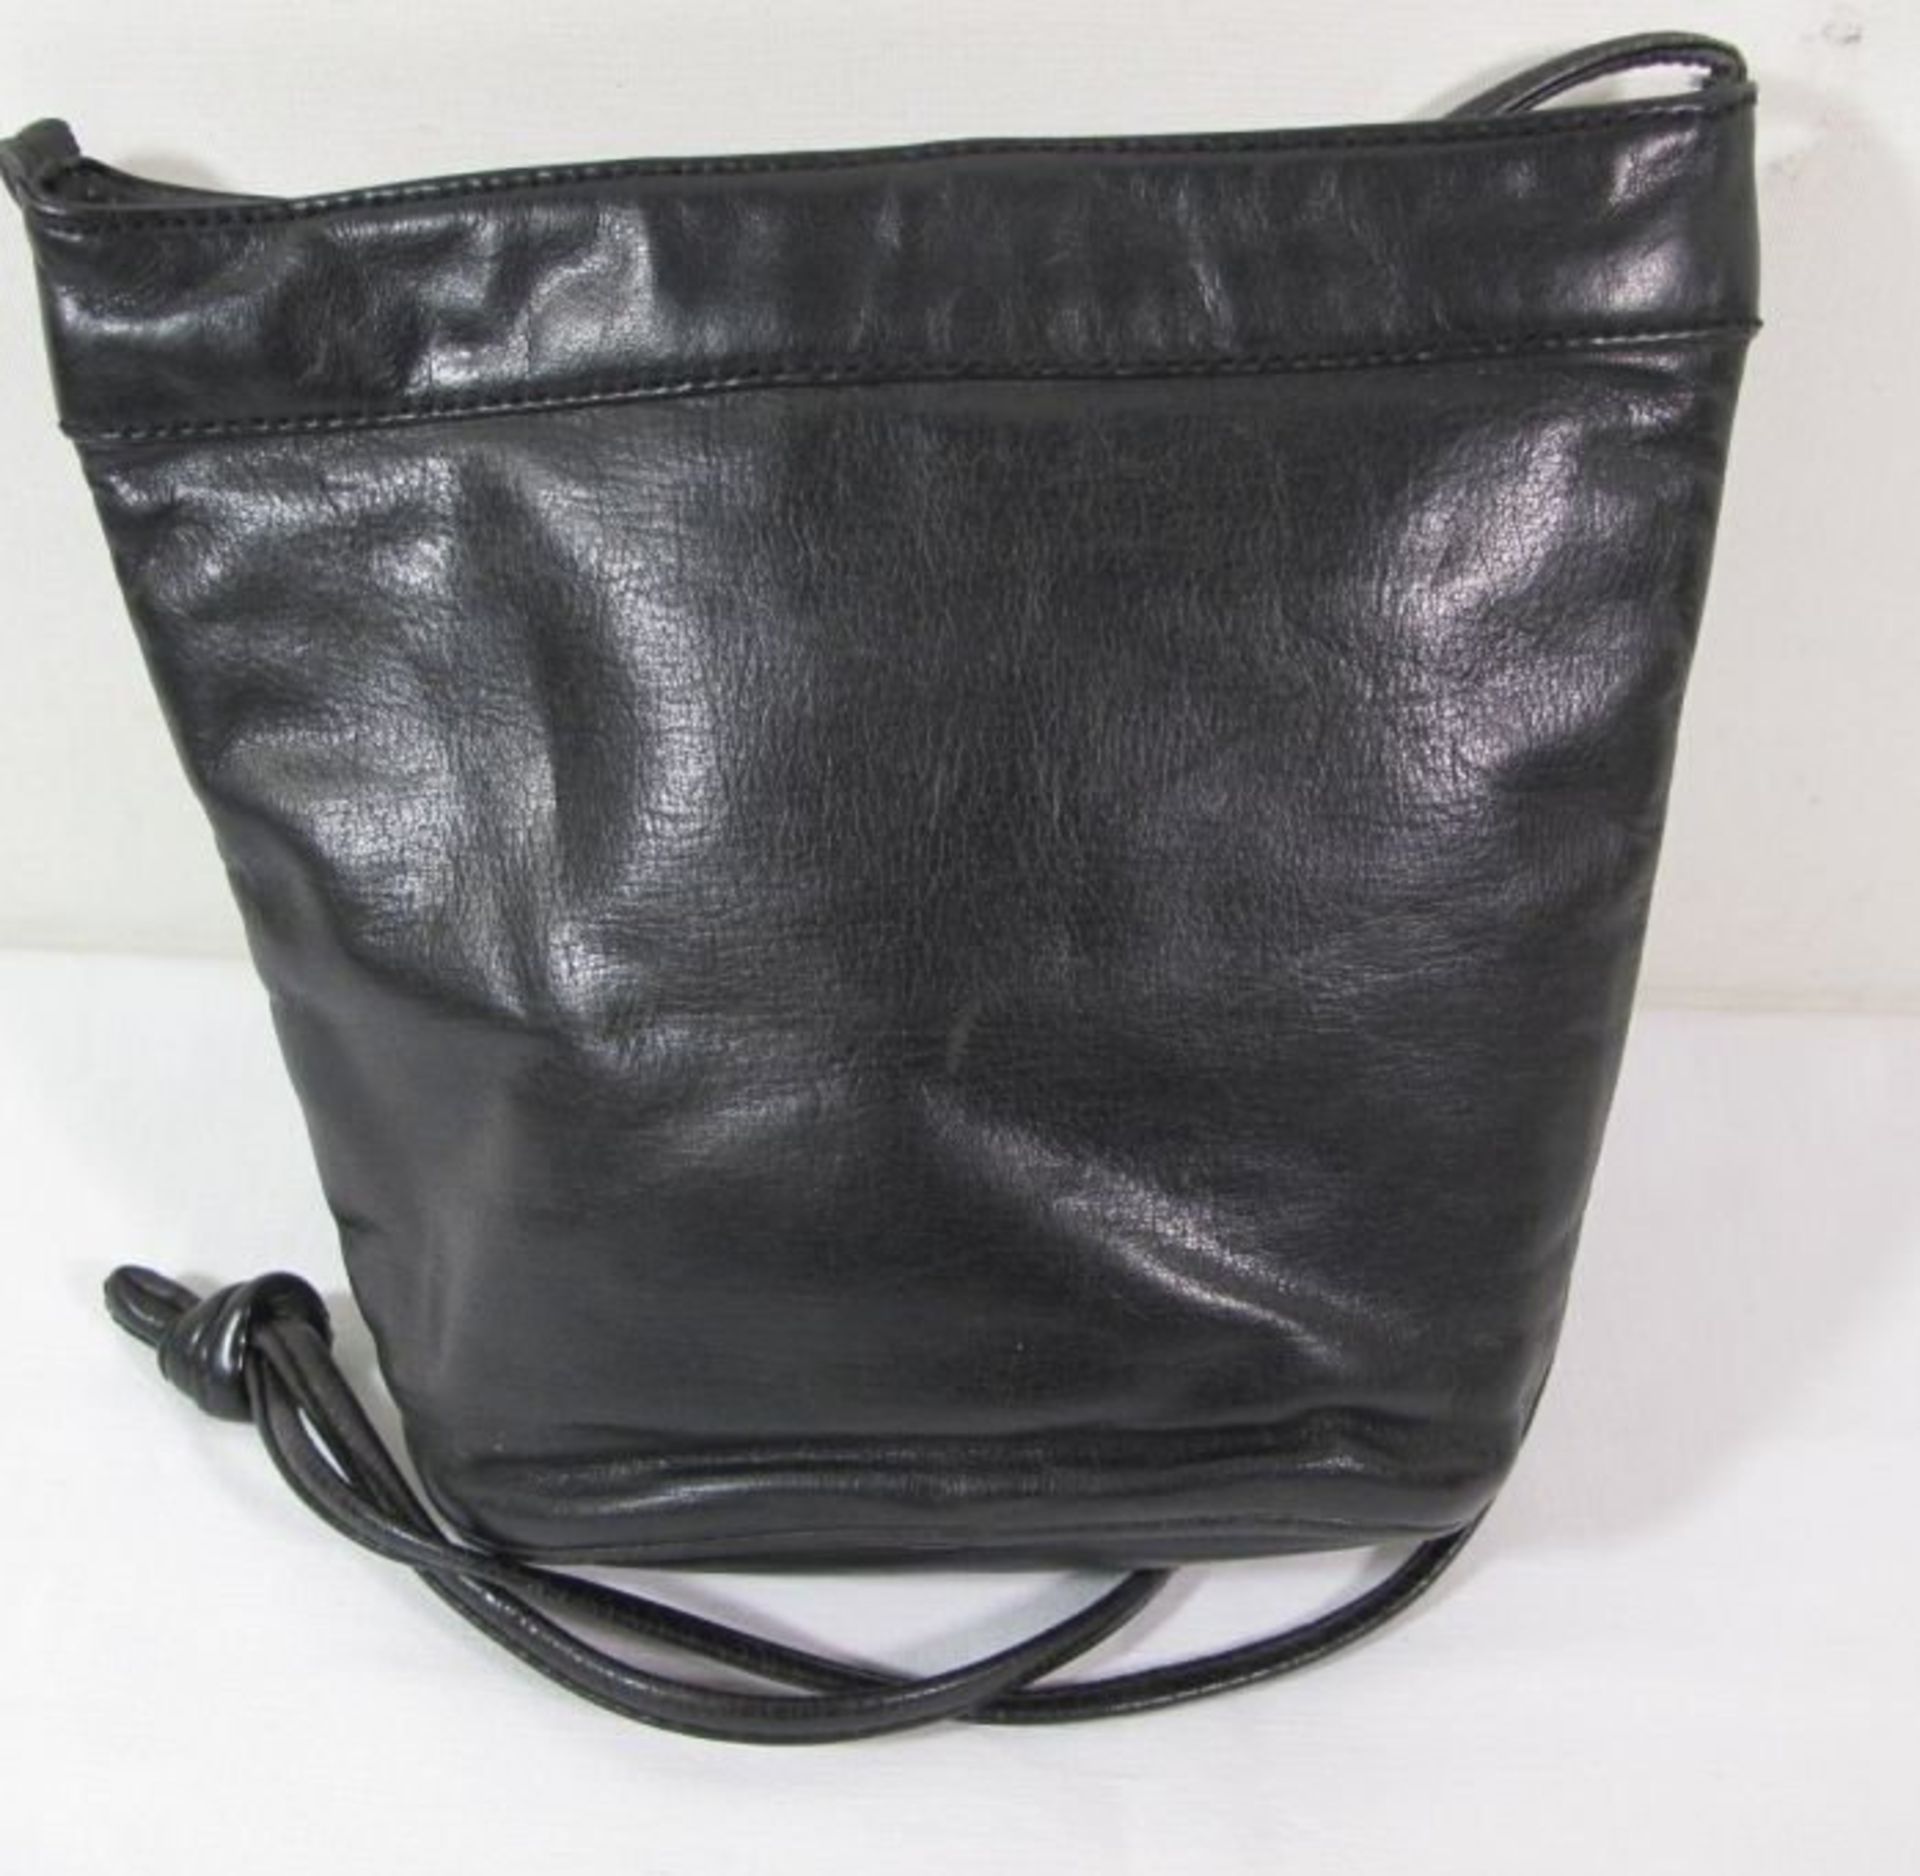 Damenhandtasche, BREE, schwarzes Leder, leichte Tragespuren, H-18cm B-22cm. - Bild 2 aus 3